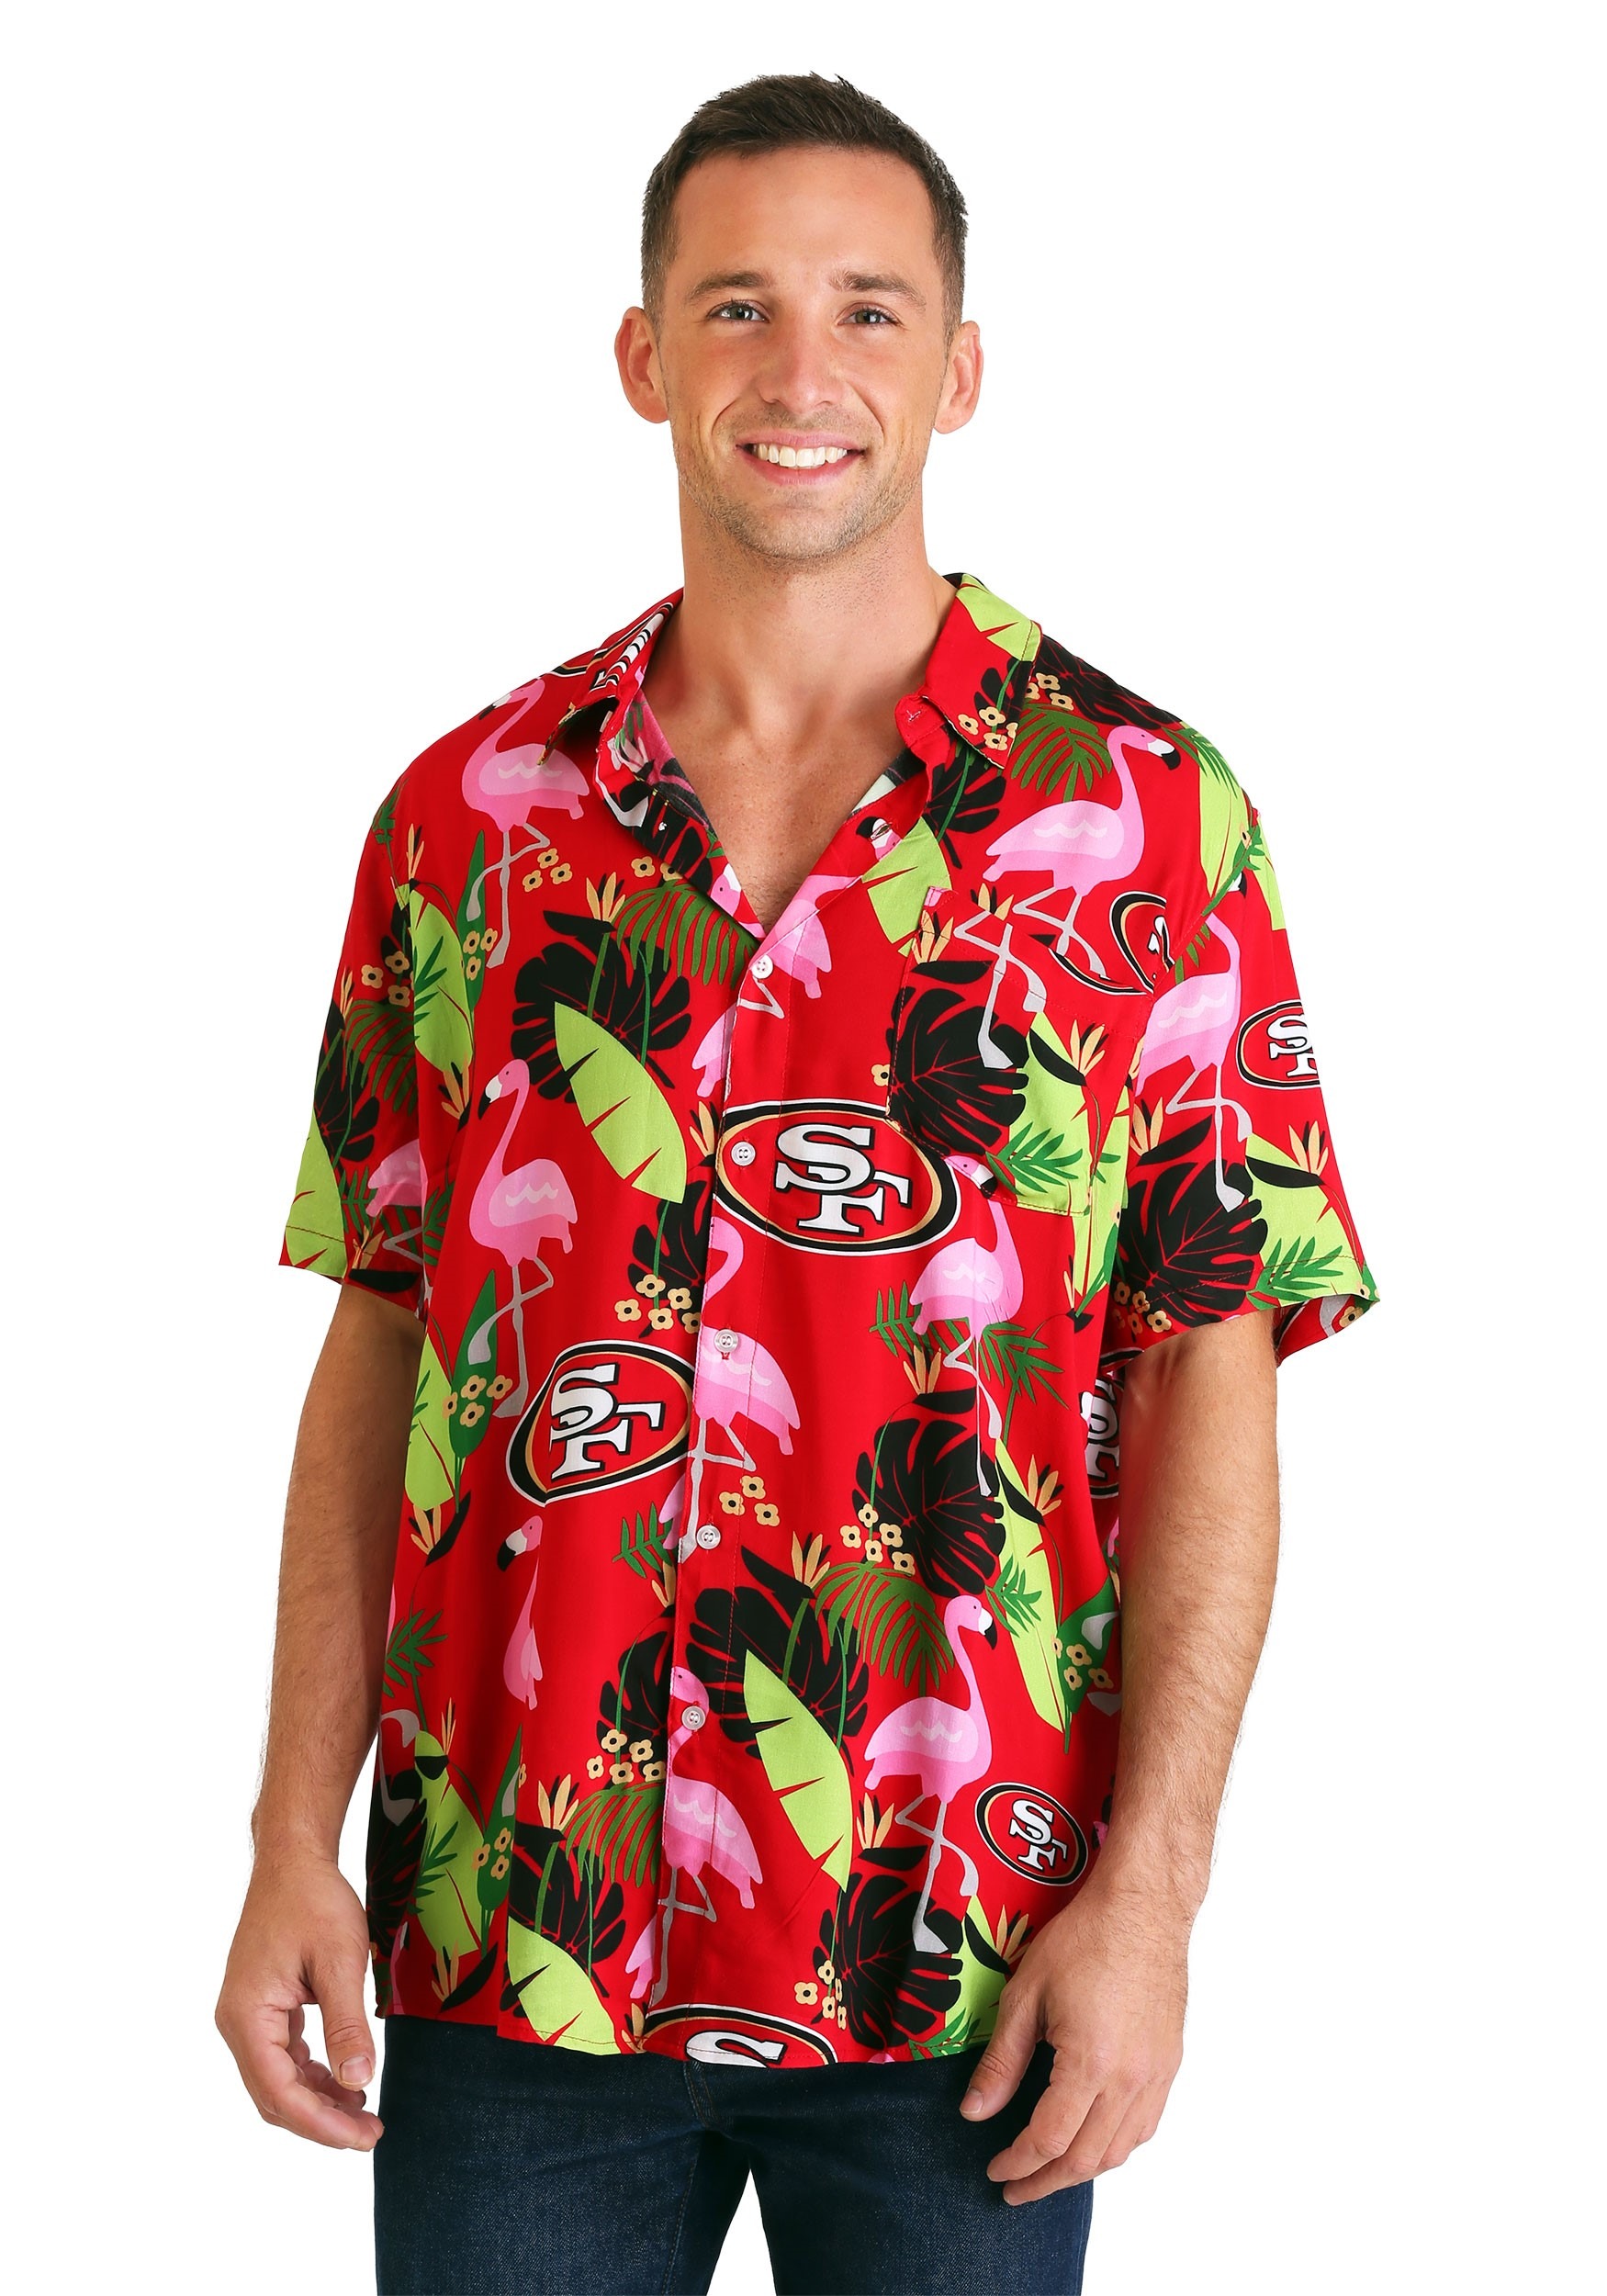 San Francisco 49ers Floral Shirt for Men